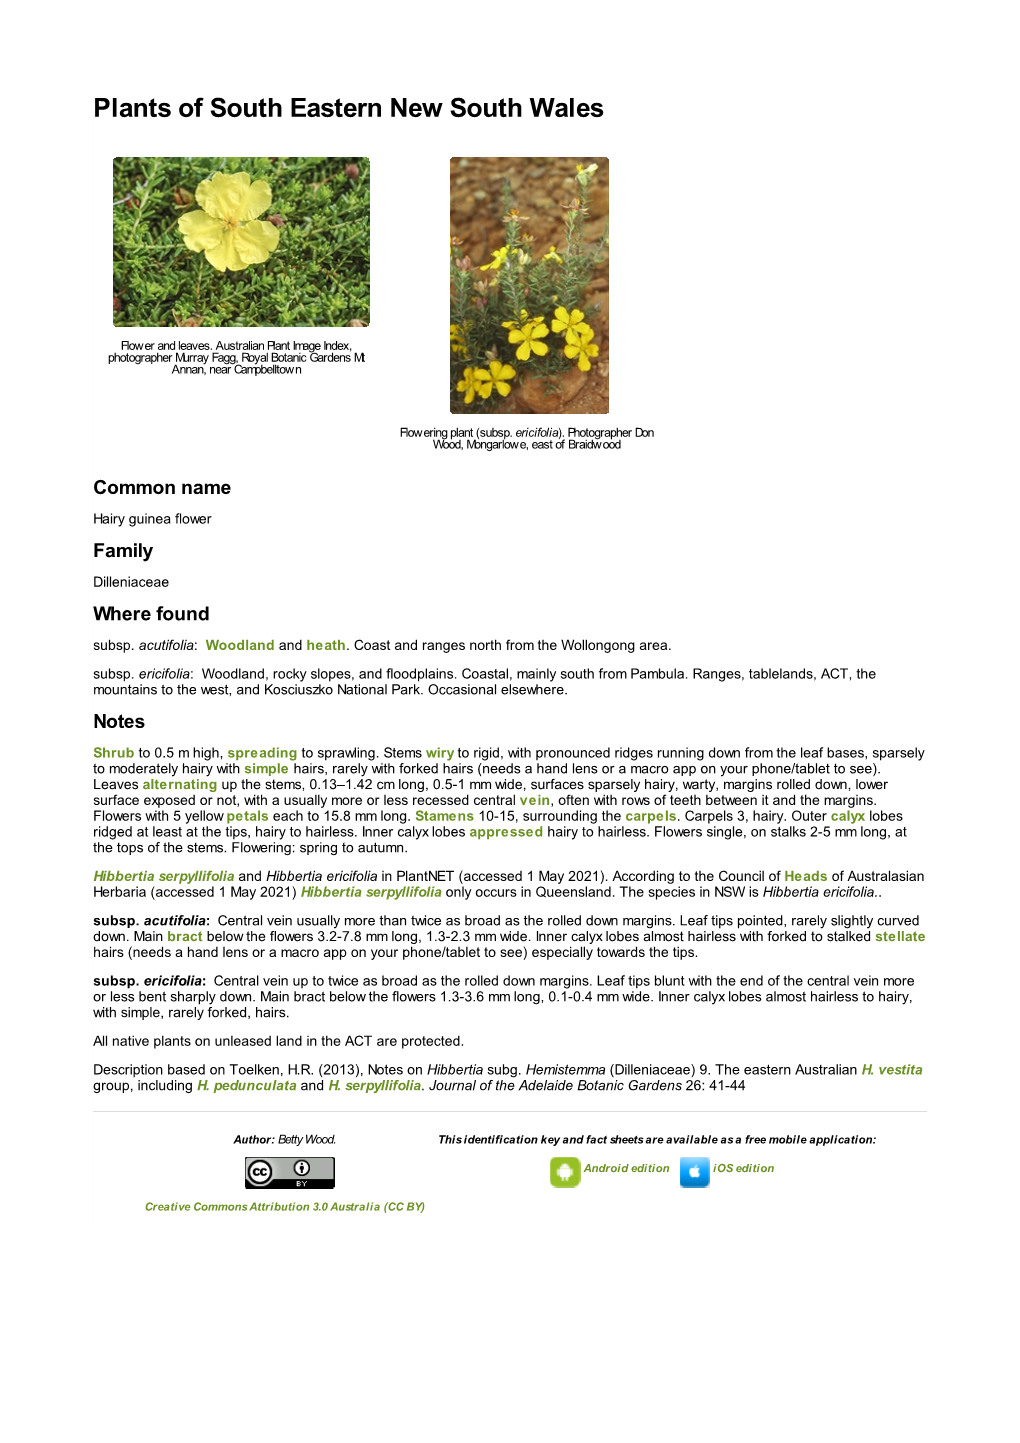 Hibbertia Ericifolia in Plantnet (Accessed 1 May 2021)